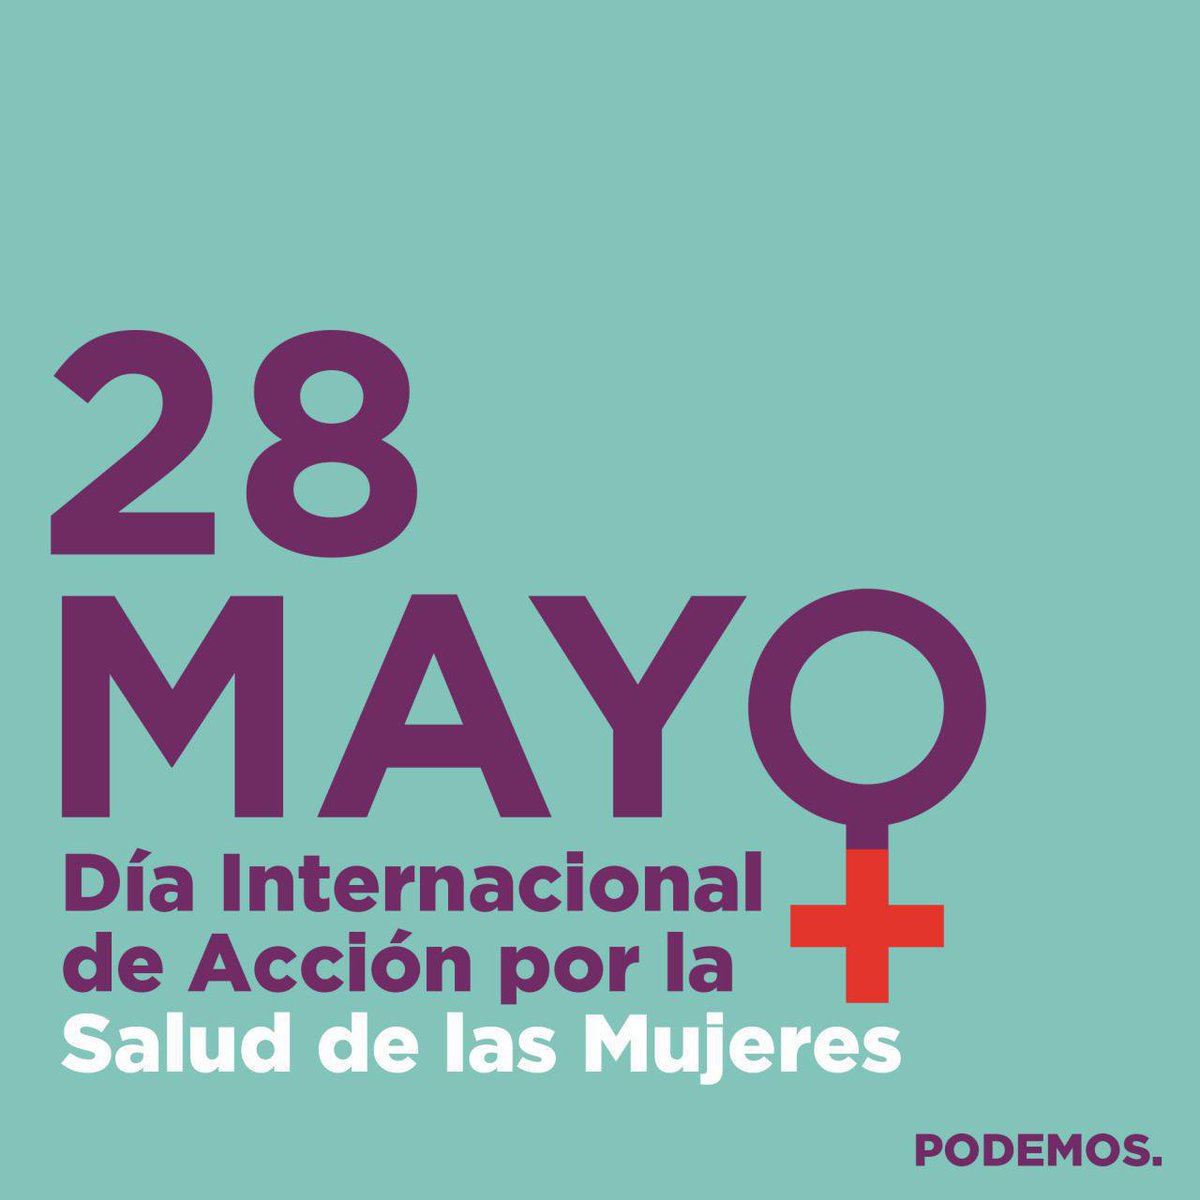 ♀️Salud sexual y reproductiva
♀️Violencias machistas que matan y enferman

♀️Día internacional de Acción por la #SaludDeLasMujeres
♀️Derechos que importan
#28M #ActúaPorMiSalud